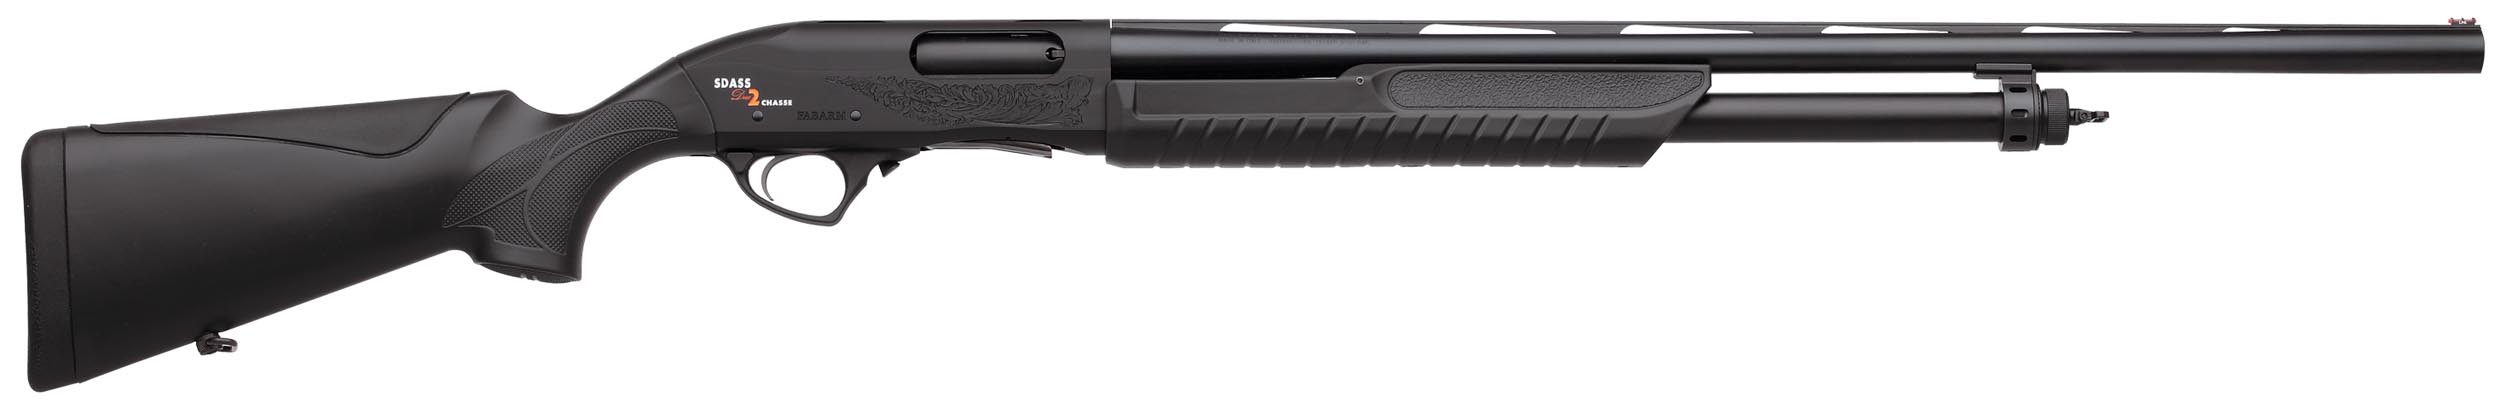 FA2001-01 Fusil à pompe calibre 12 SDASS 2 Chasse Composite - FA2001